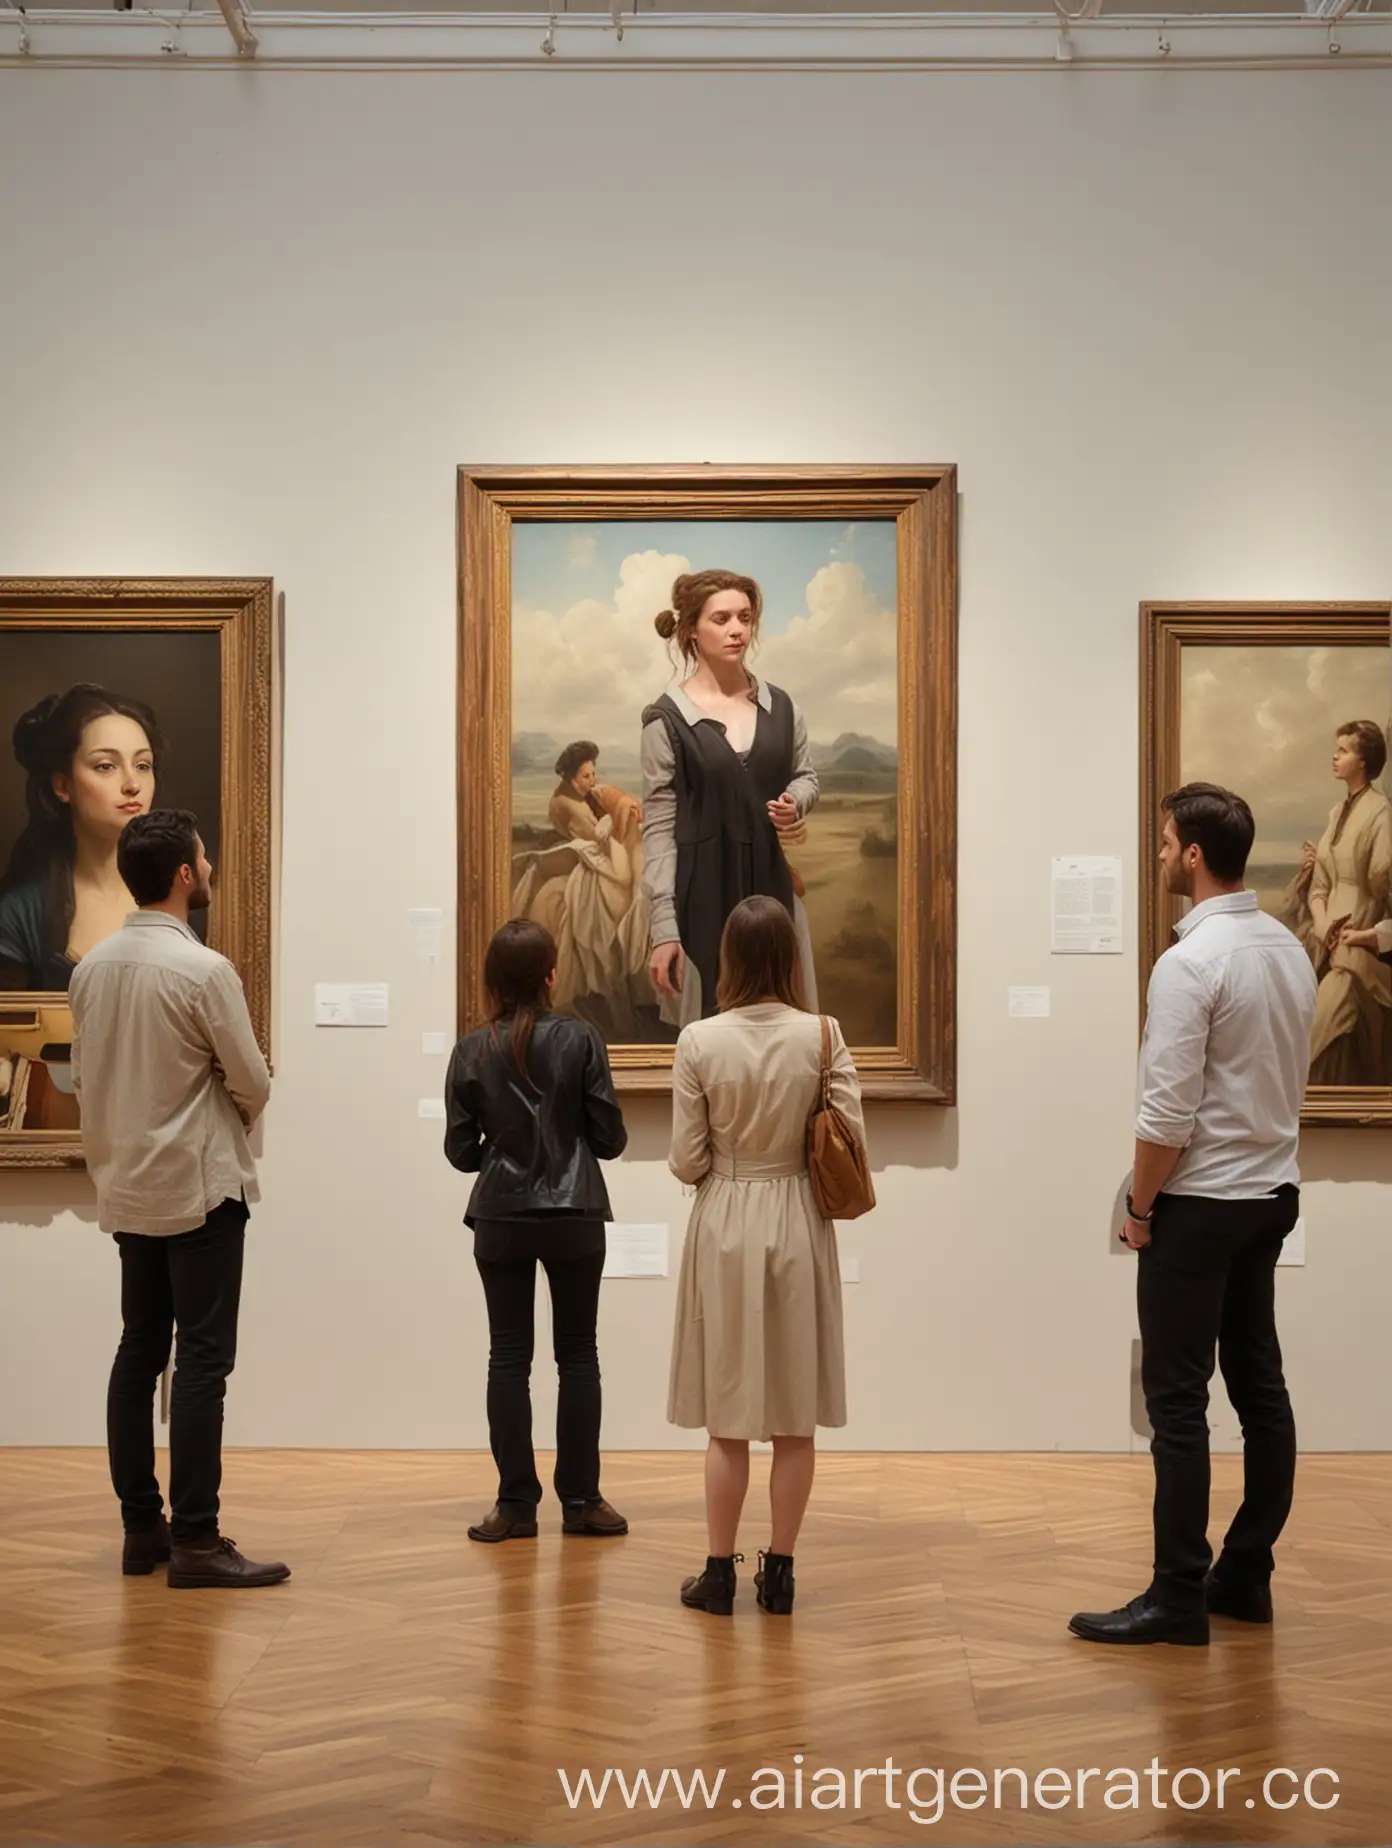 Группа людей три человека две женщины и мужчина вместе 
в картинной галерее смотрят на картины в полный рост